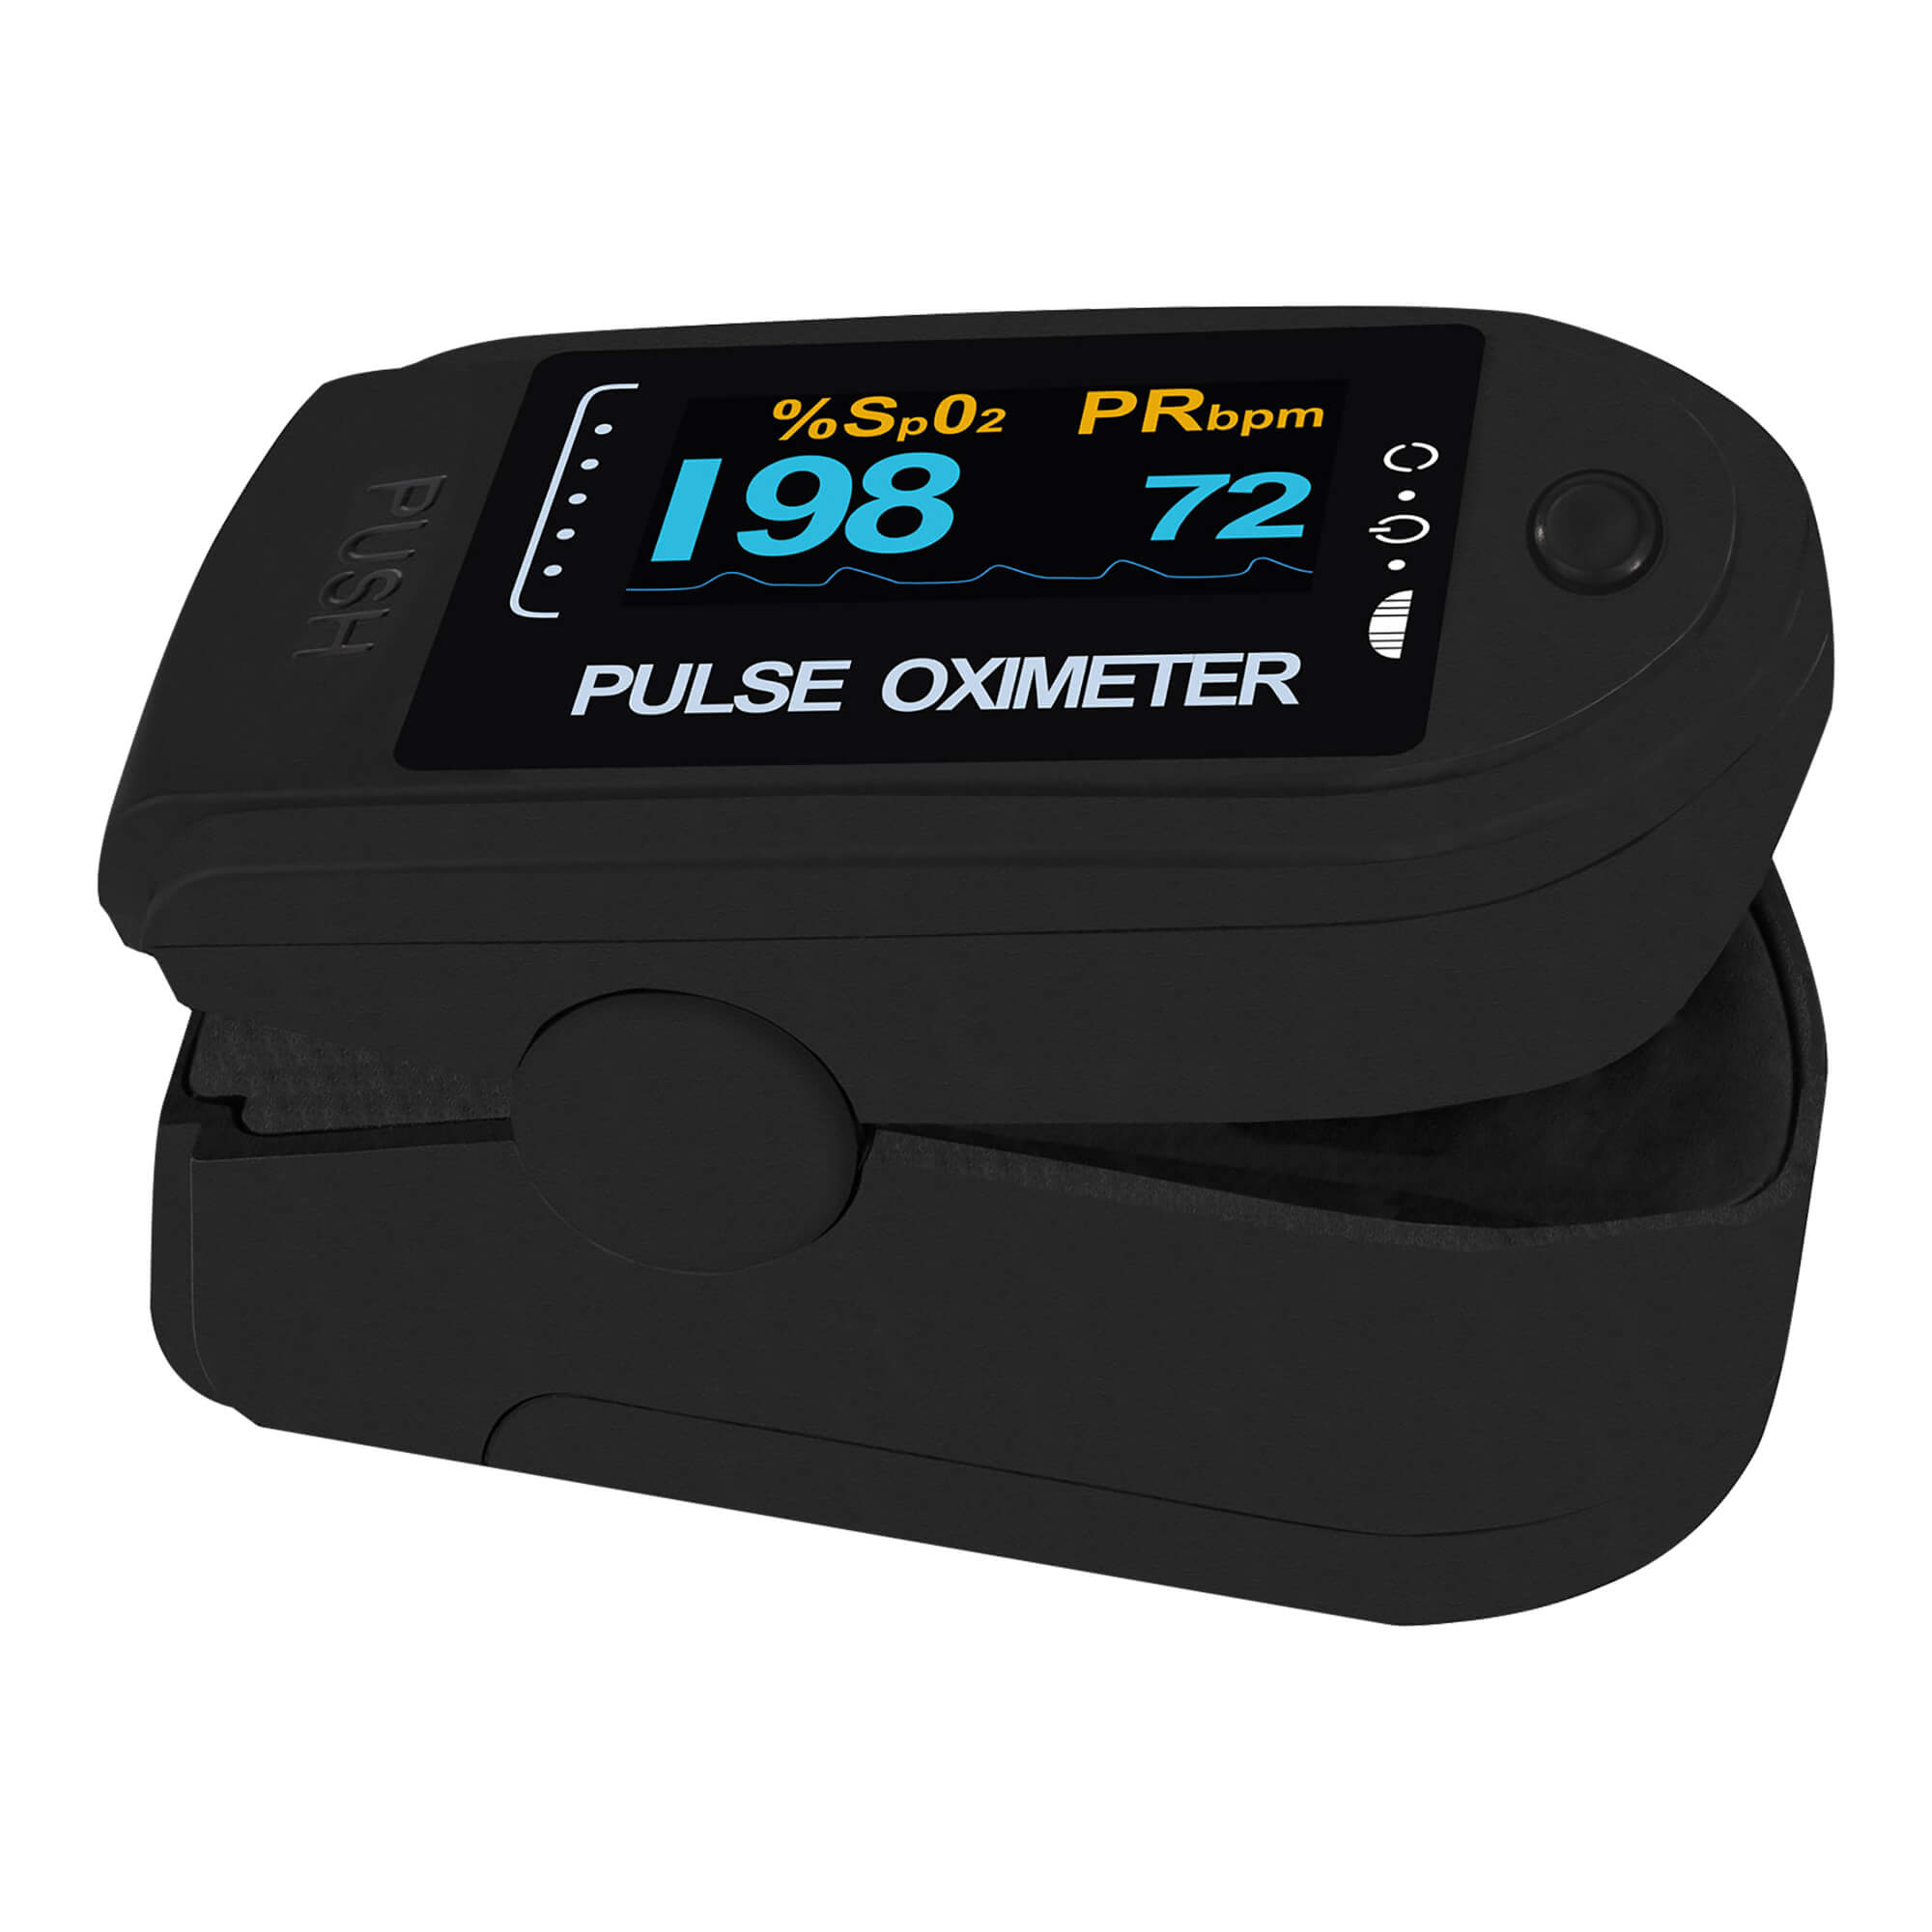 Finger-Pulsoximeter. Mit zweifarbigem OLED-Display, Batterien und Zubehör. Farbe: schwarz.